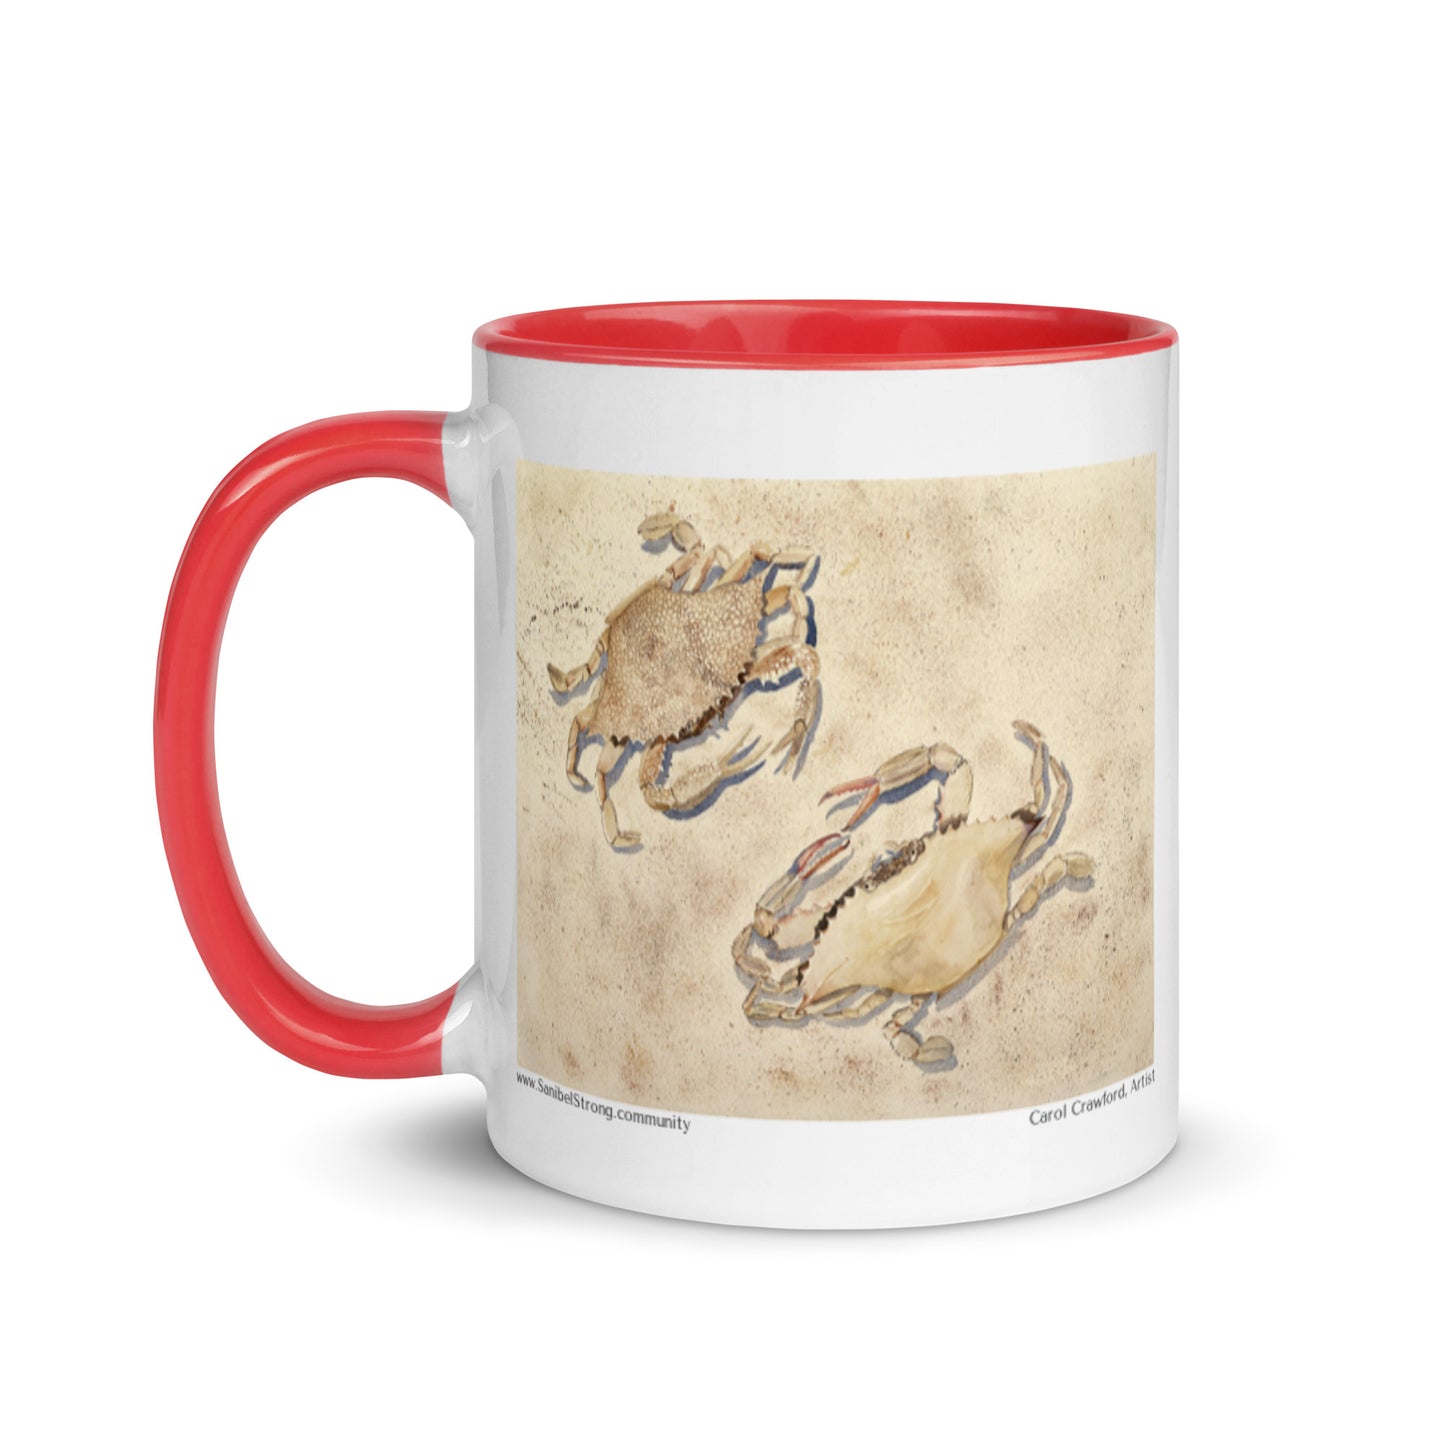 Sanibel Watercolor Crabs Mug